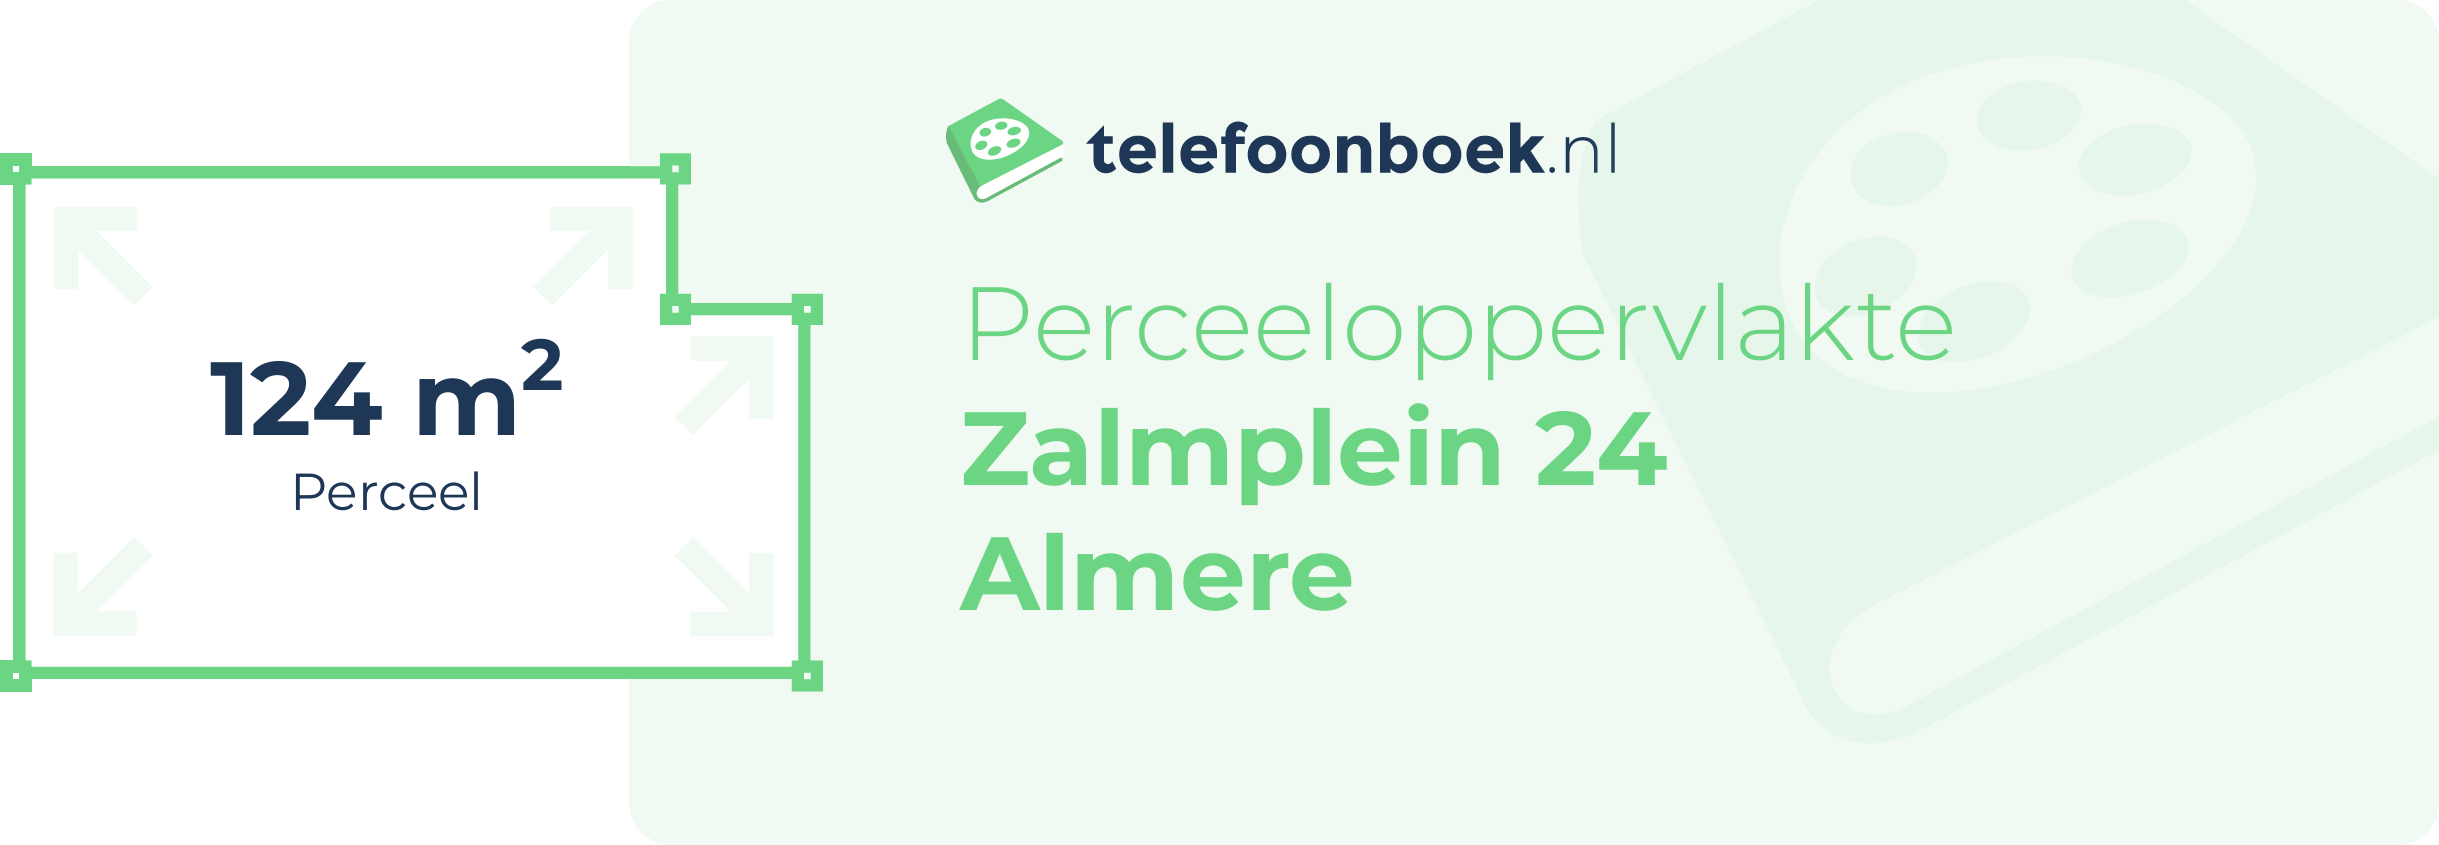 Perceeloppervlakte Zalmplein 24 Almere